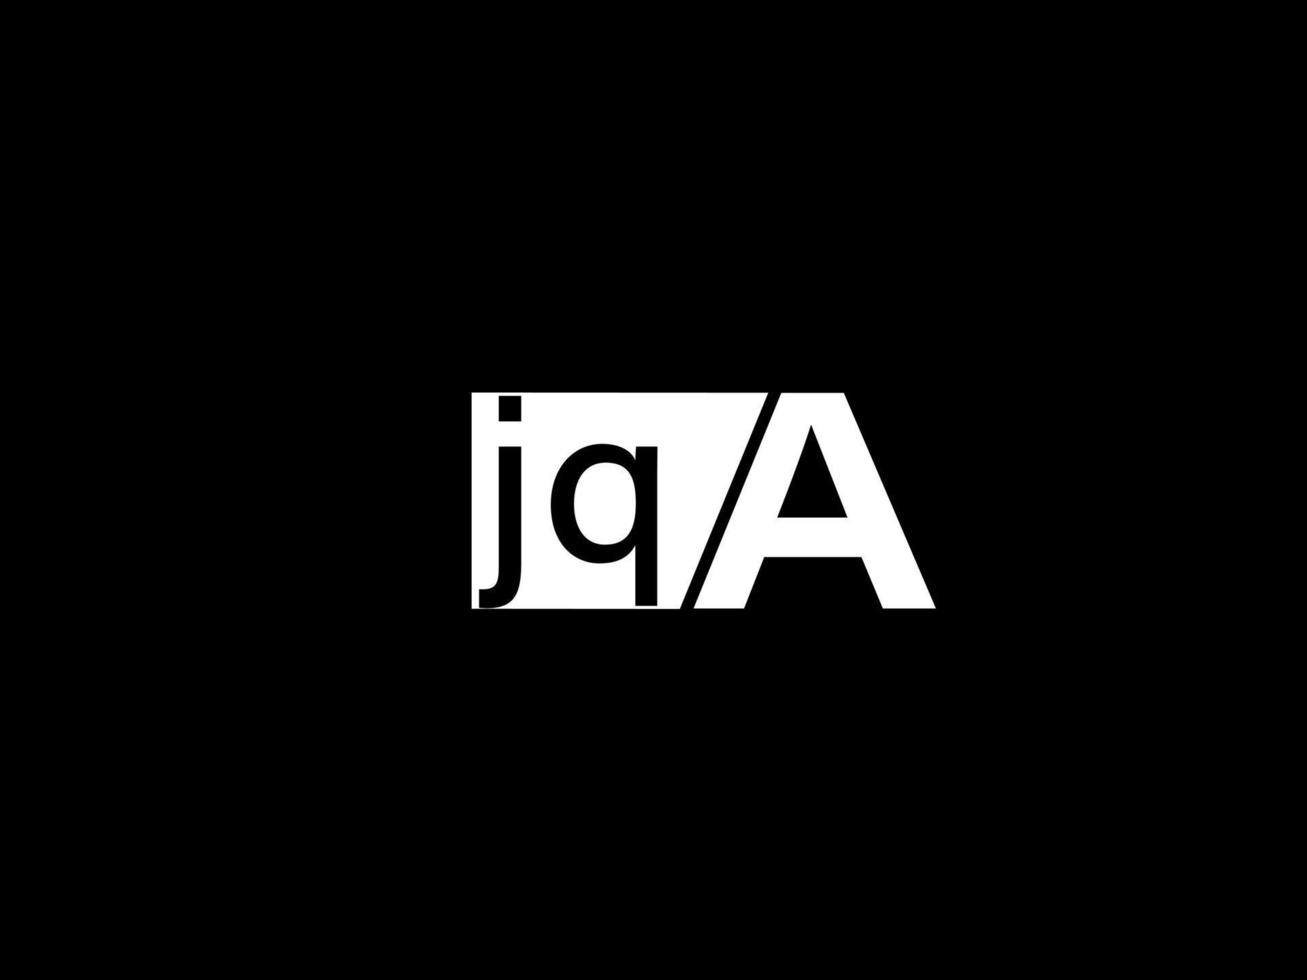 jqa-Logo und Grafikdesign Vektorgrafiken, Symbole isoliert auf schwarzem Hintergrund vektor